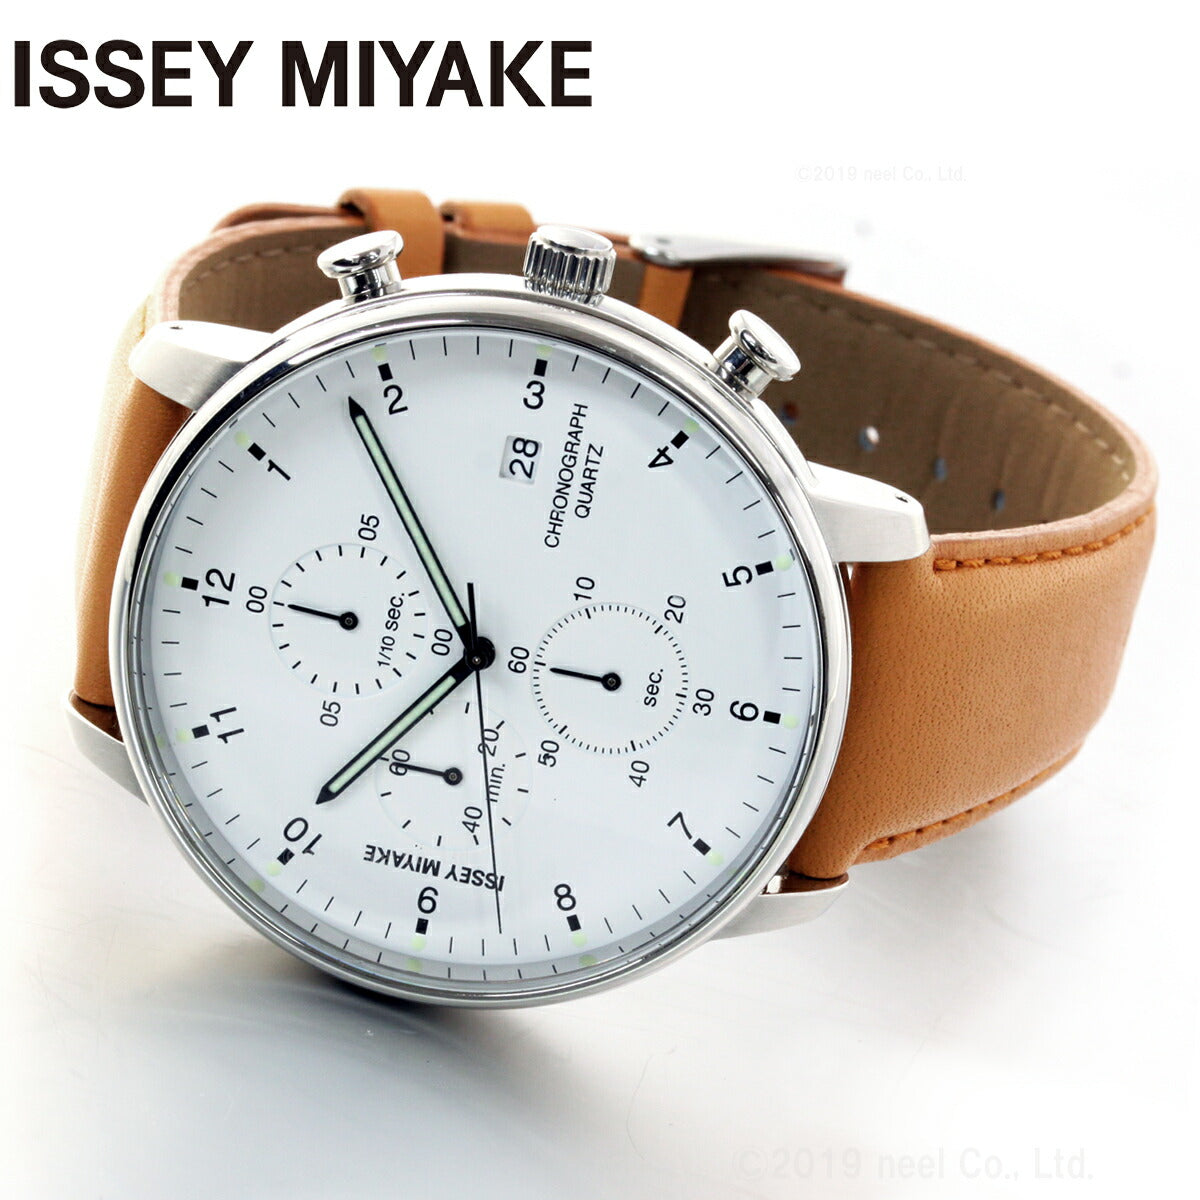 イッセイミヤケ ISSEY MIYAKE 腕時計 メンズ C シー 岩崎一郎デザイン クロノグラフ NYAD003